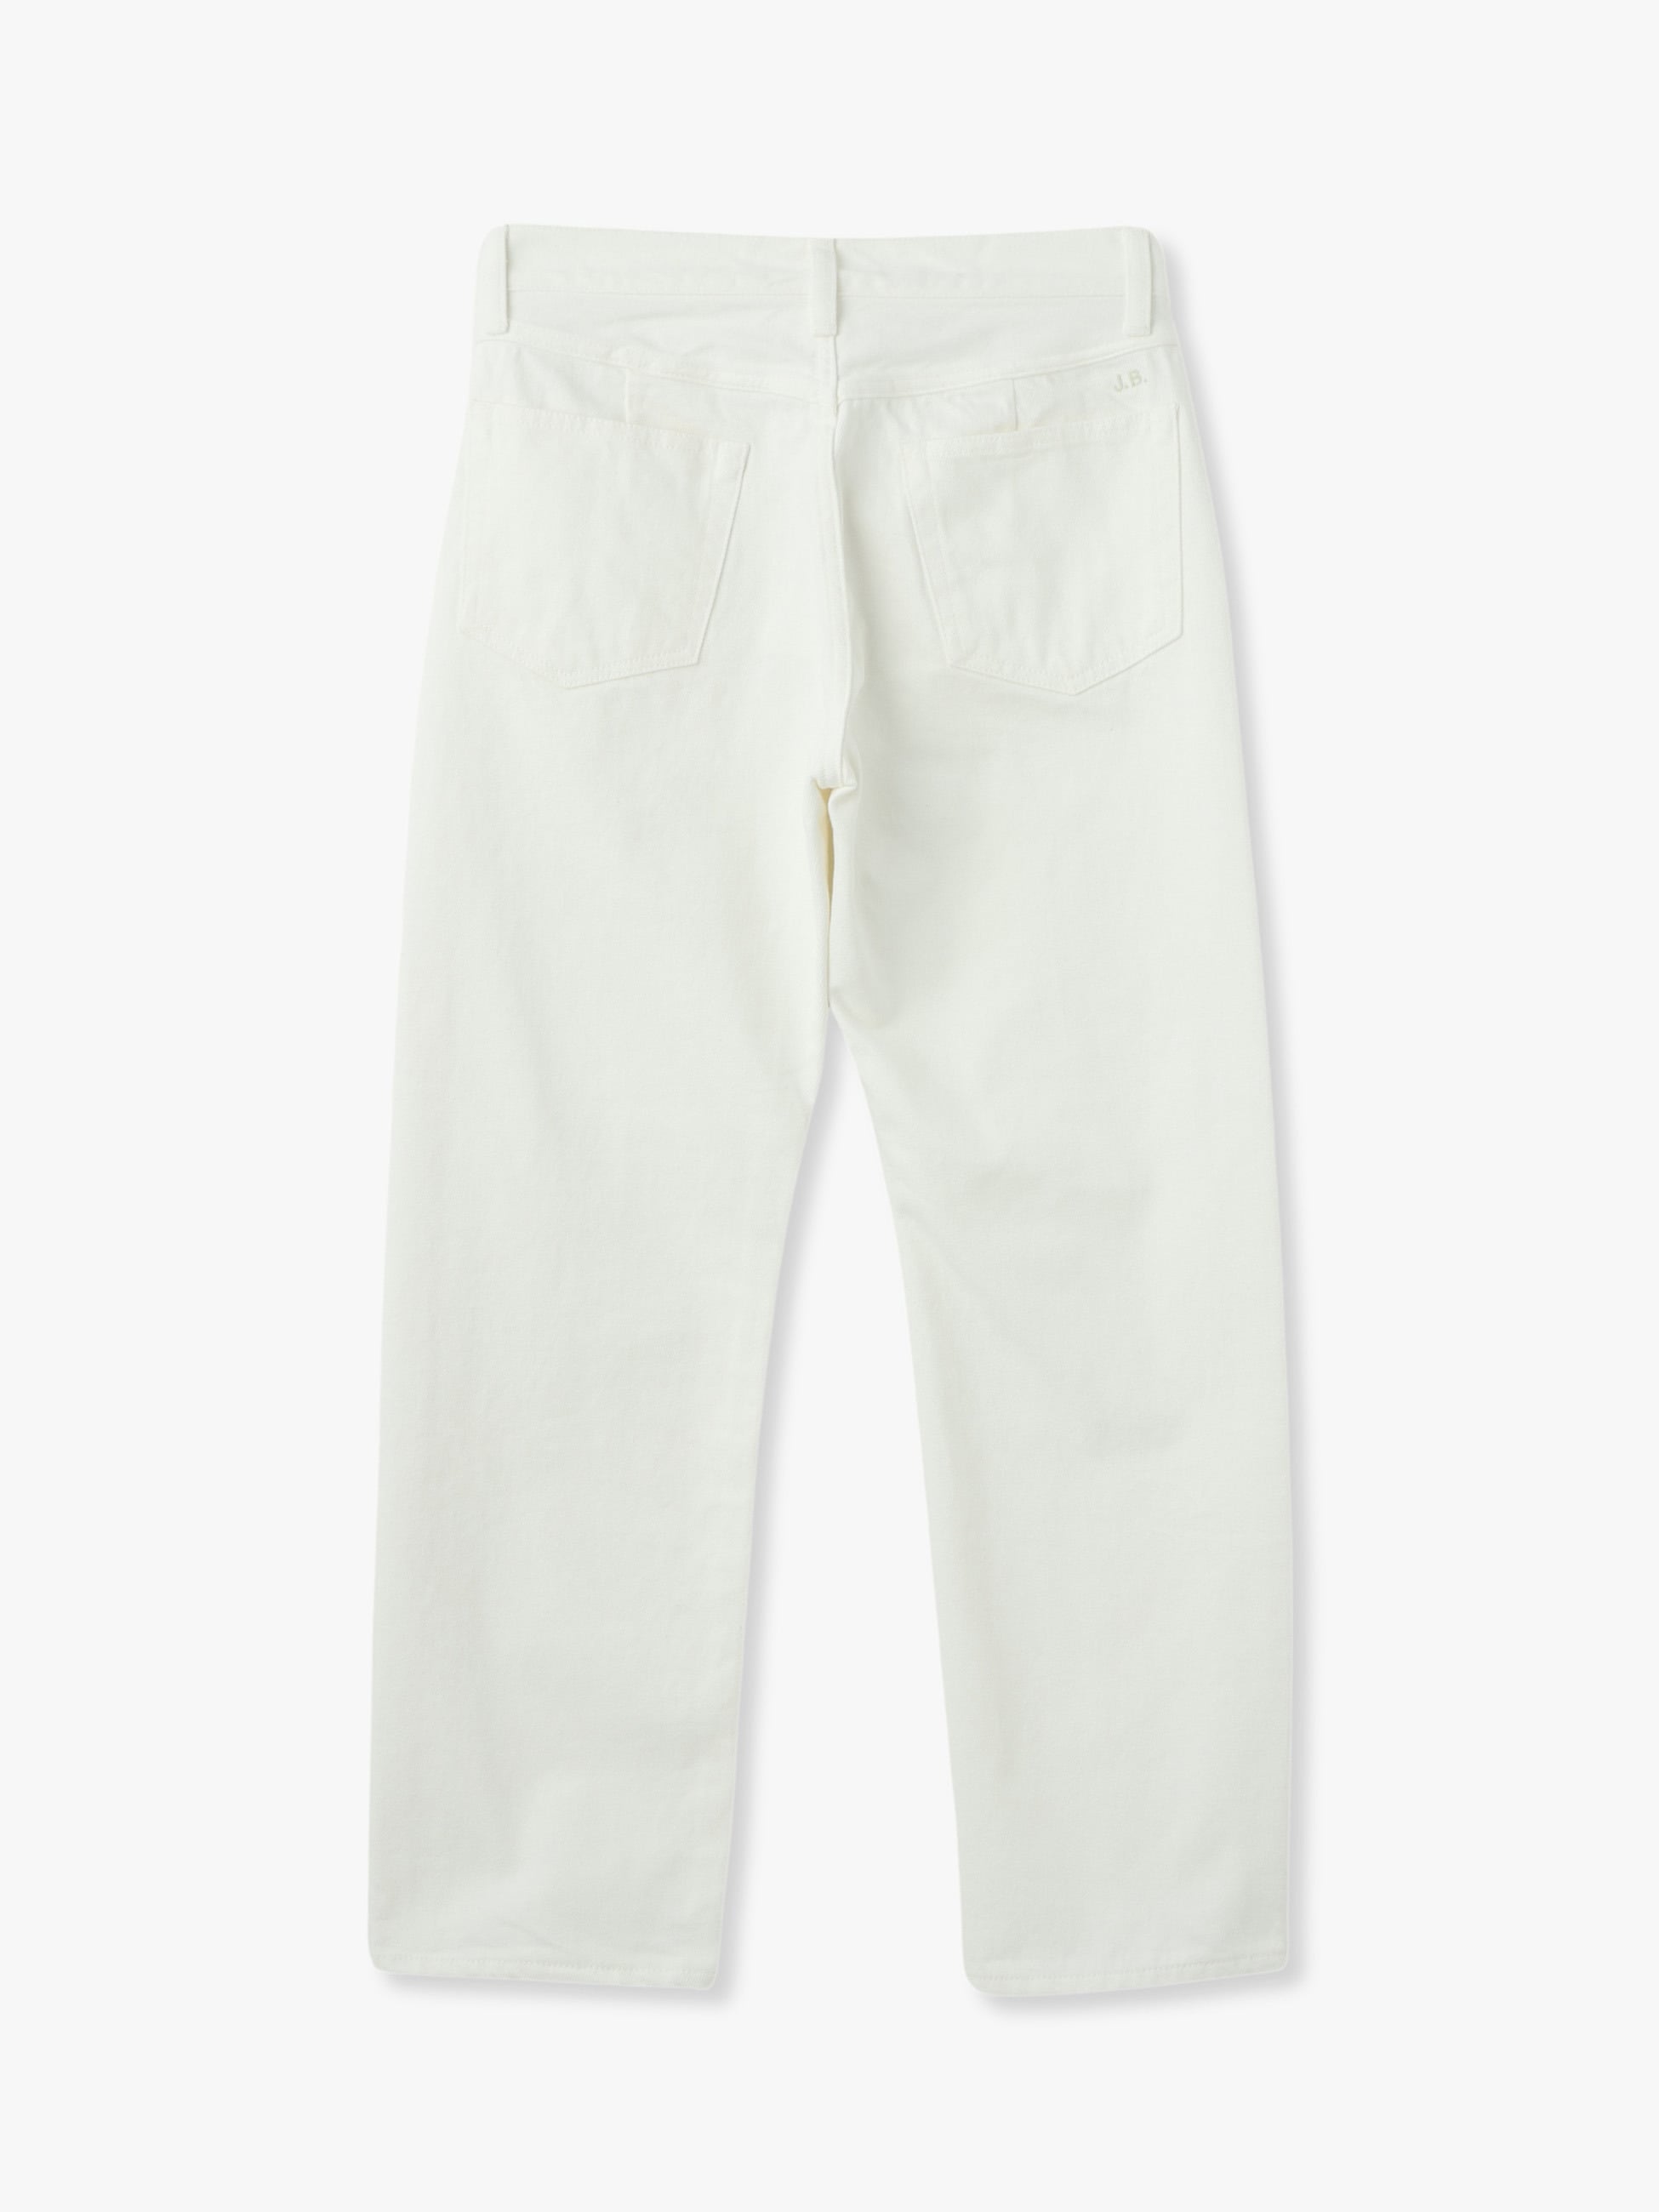 White Denim Pants 詳細画像 white 1